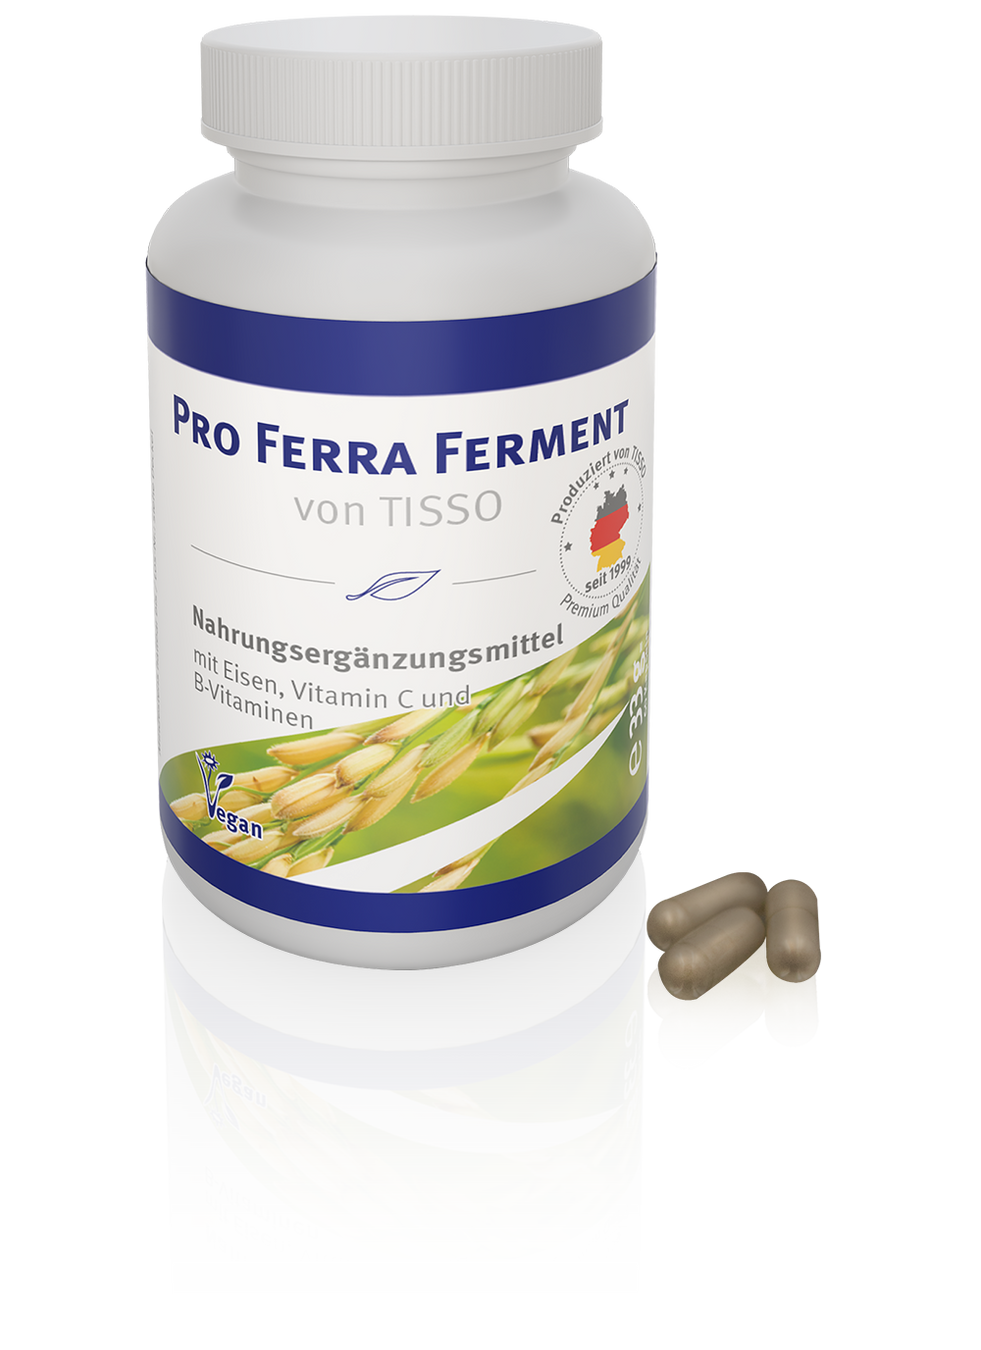 TISSO 發酵鐵元膠囊 Pro Ferra Ferment (60 capsules)